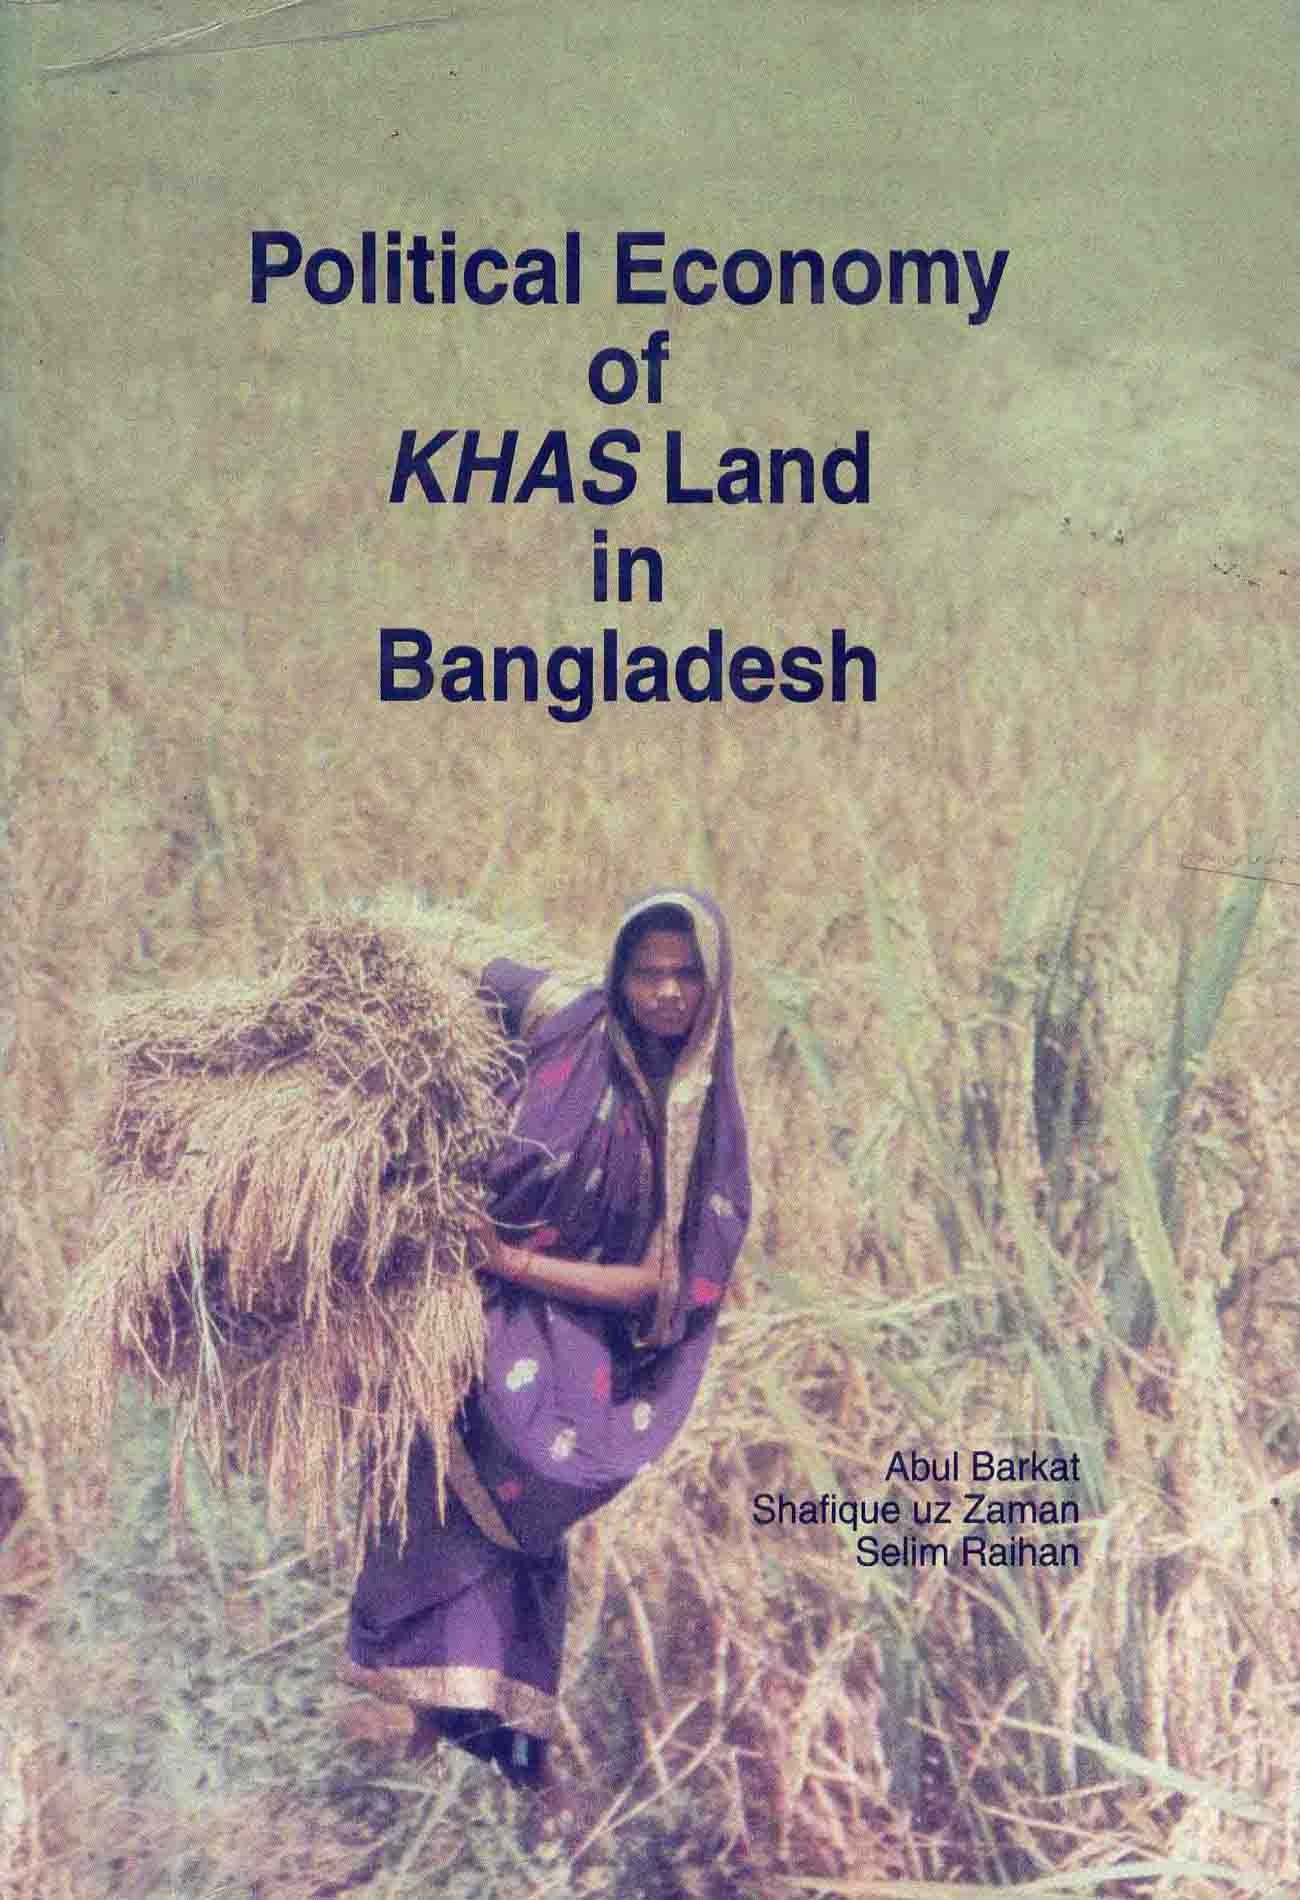 POLITICAL ECONOMY OF KHAS LAND IN BANGLADESH